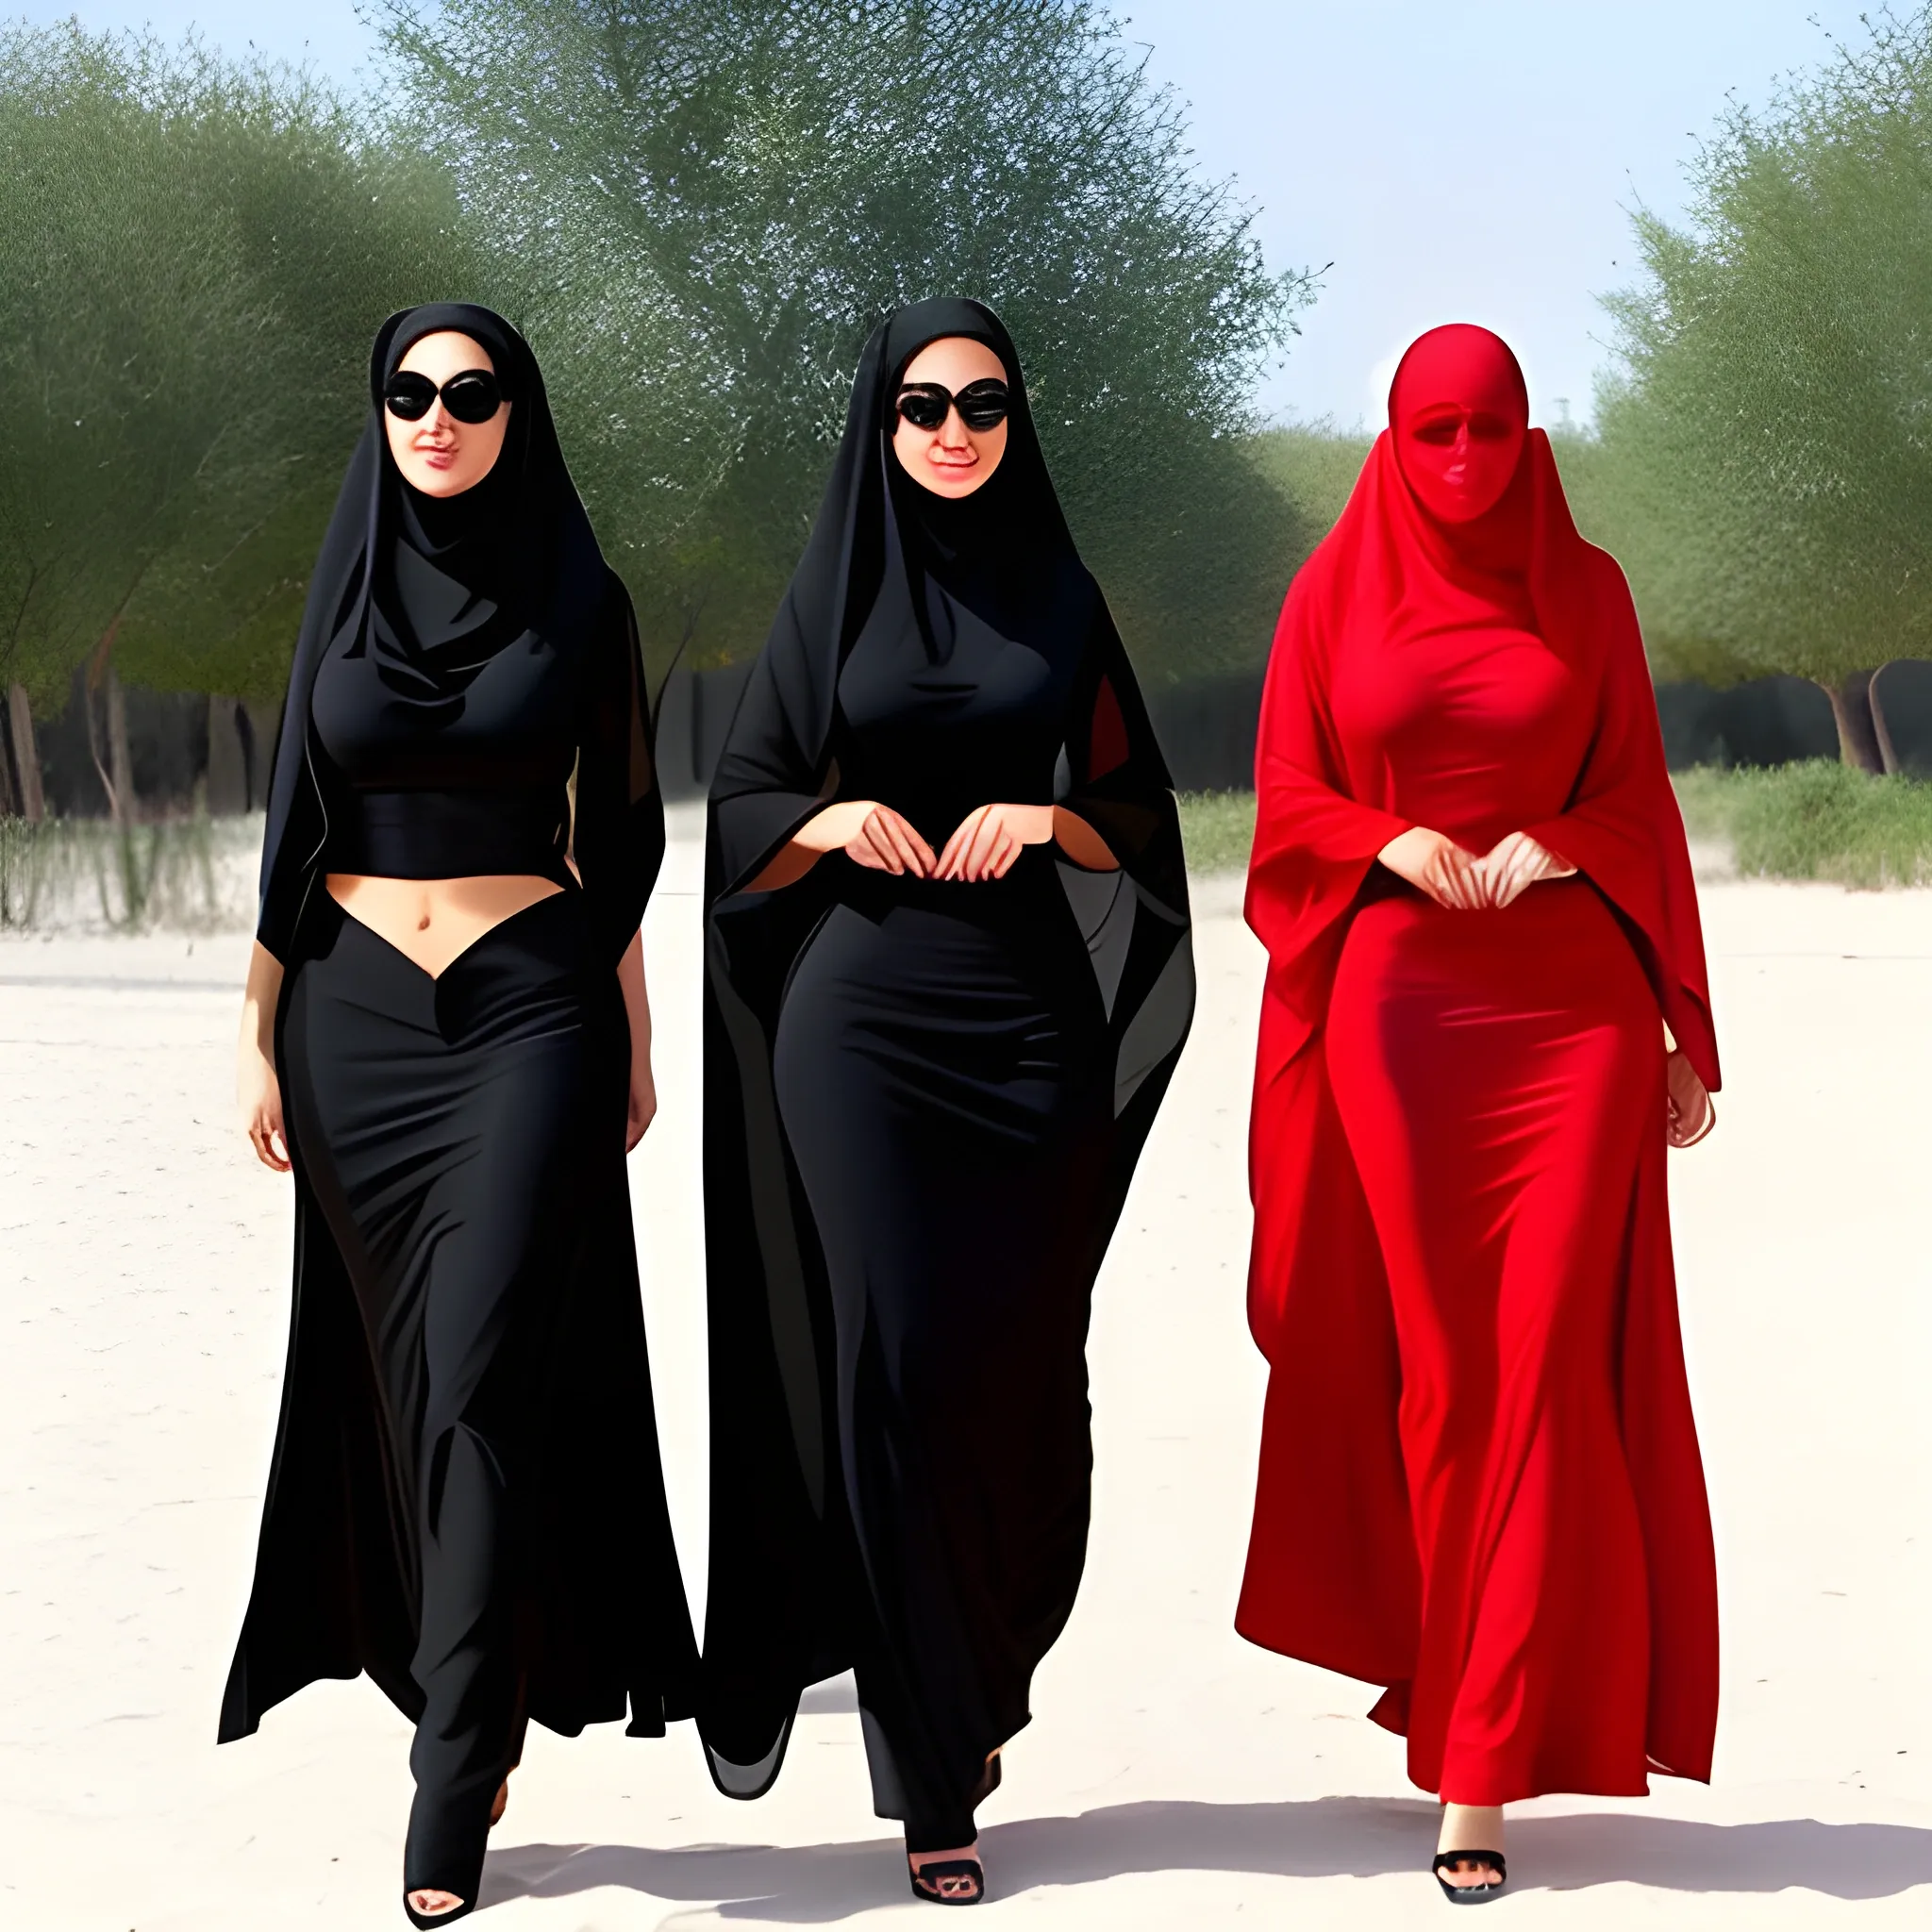  Iranian woman with a chador hijab - bikini- three girl